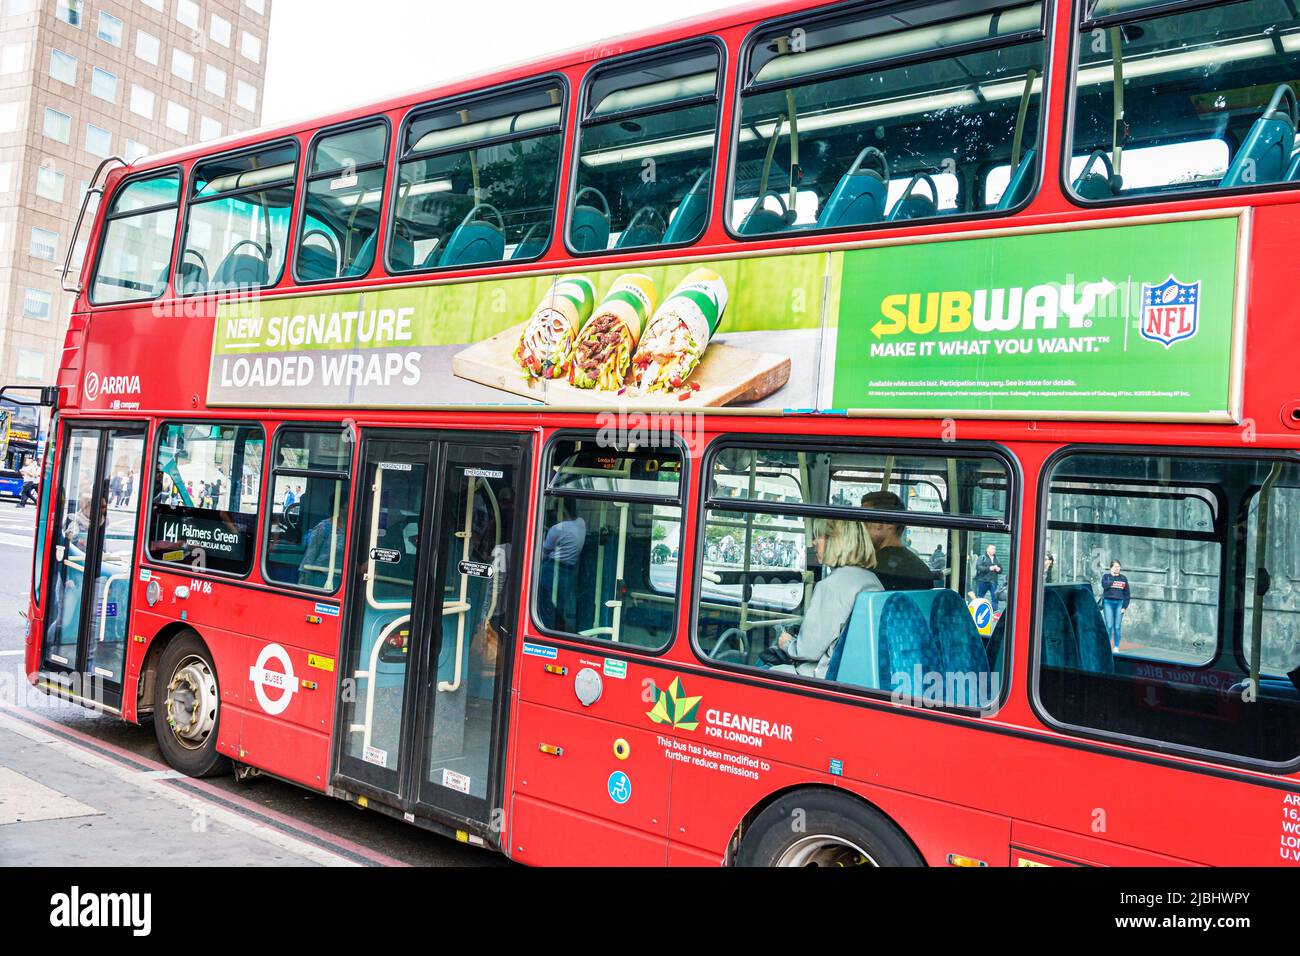 Londres Inglaterra, South Bank Southwark, Subway sandwich shop, publicidad de publicidad de autobuses de dos pisos rojo transporte público Foto de stock